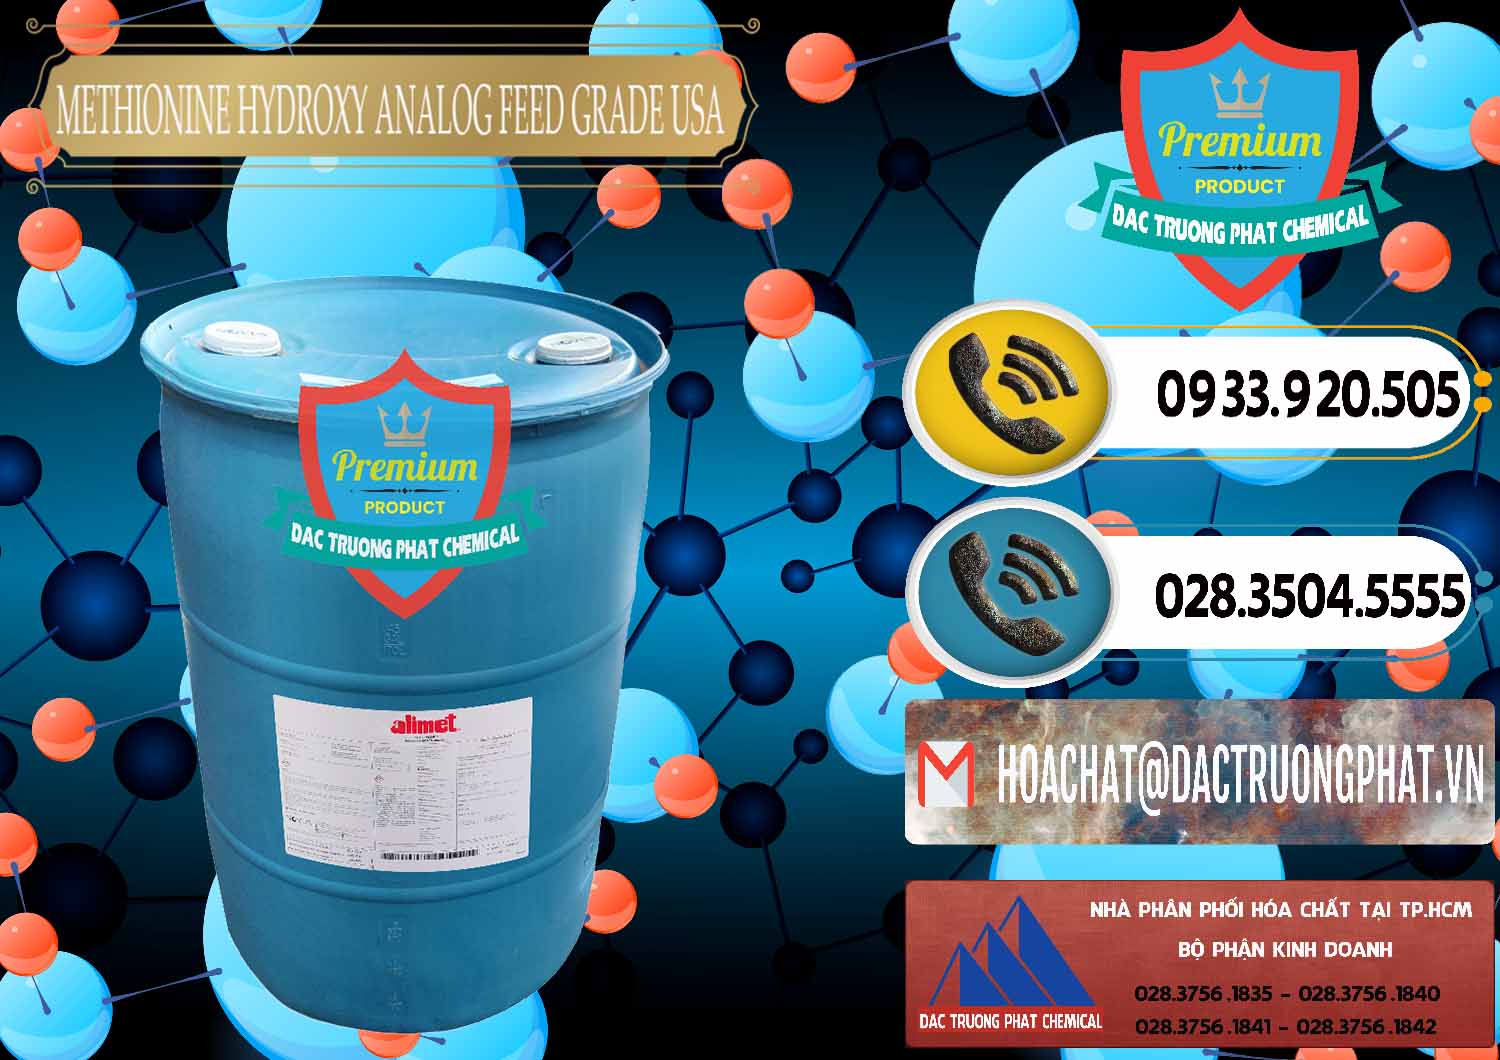 Cty nhập khẩu _ bán Methionine Nước - Dạng Lỏng Novus Alimet Mỹ USA - 0316 - Nơi phân phối _ kinh doanh hóa chất tại TP.HCM - hoachatdetnhuom.vn